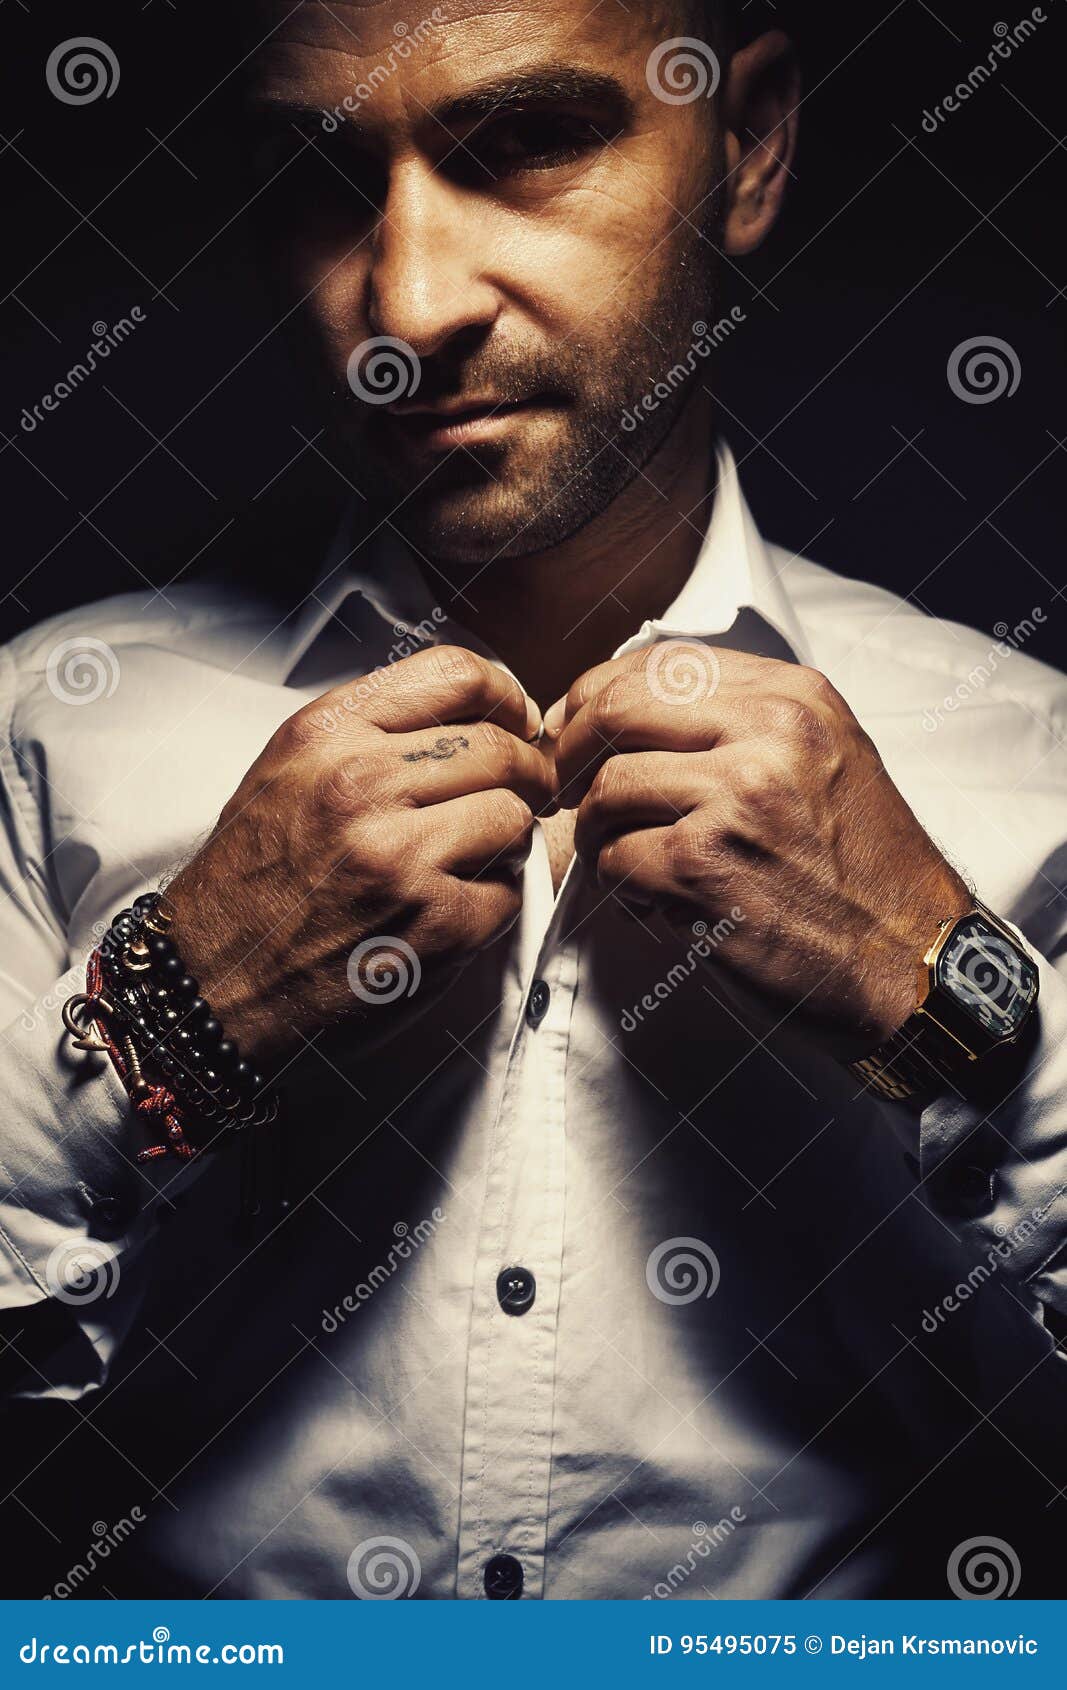 Retrato de un hombre. El hombre adulto consigue pulseras interesantes vestidas, que llevan y reloj digital viejo